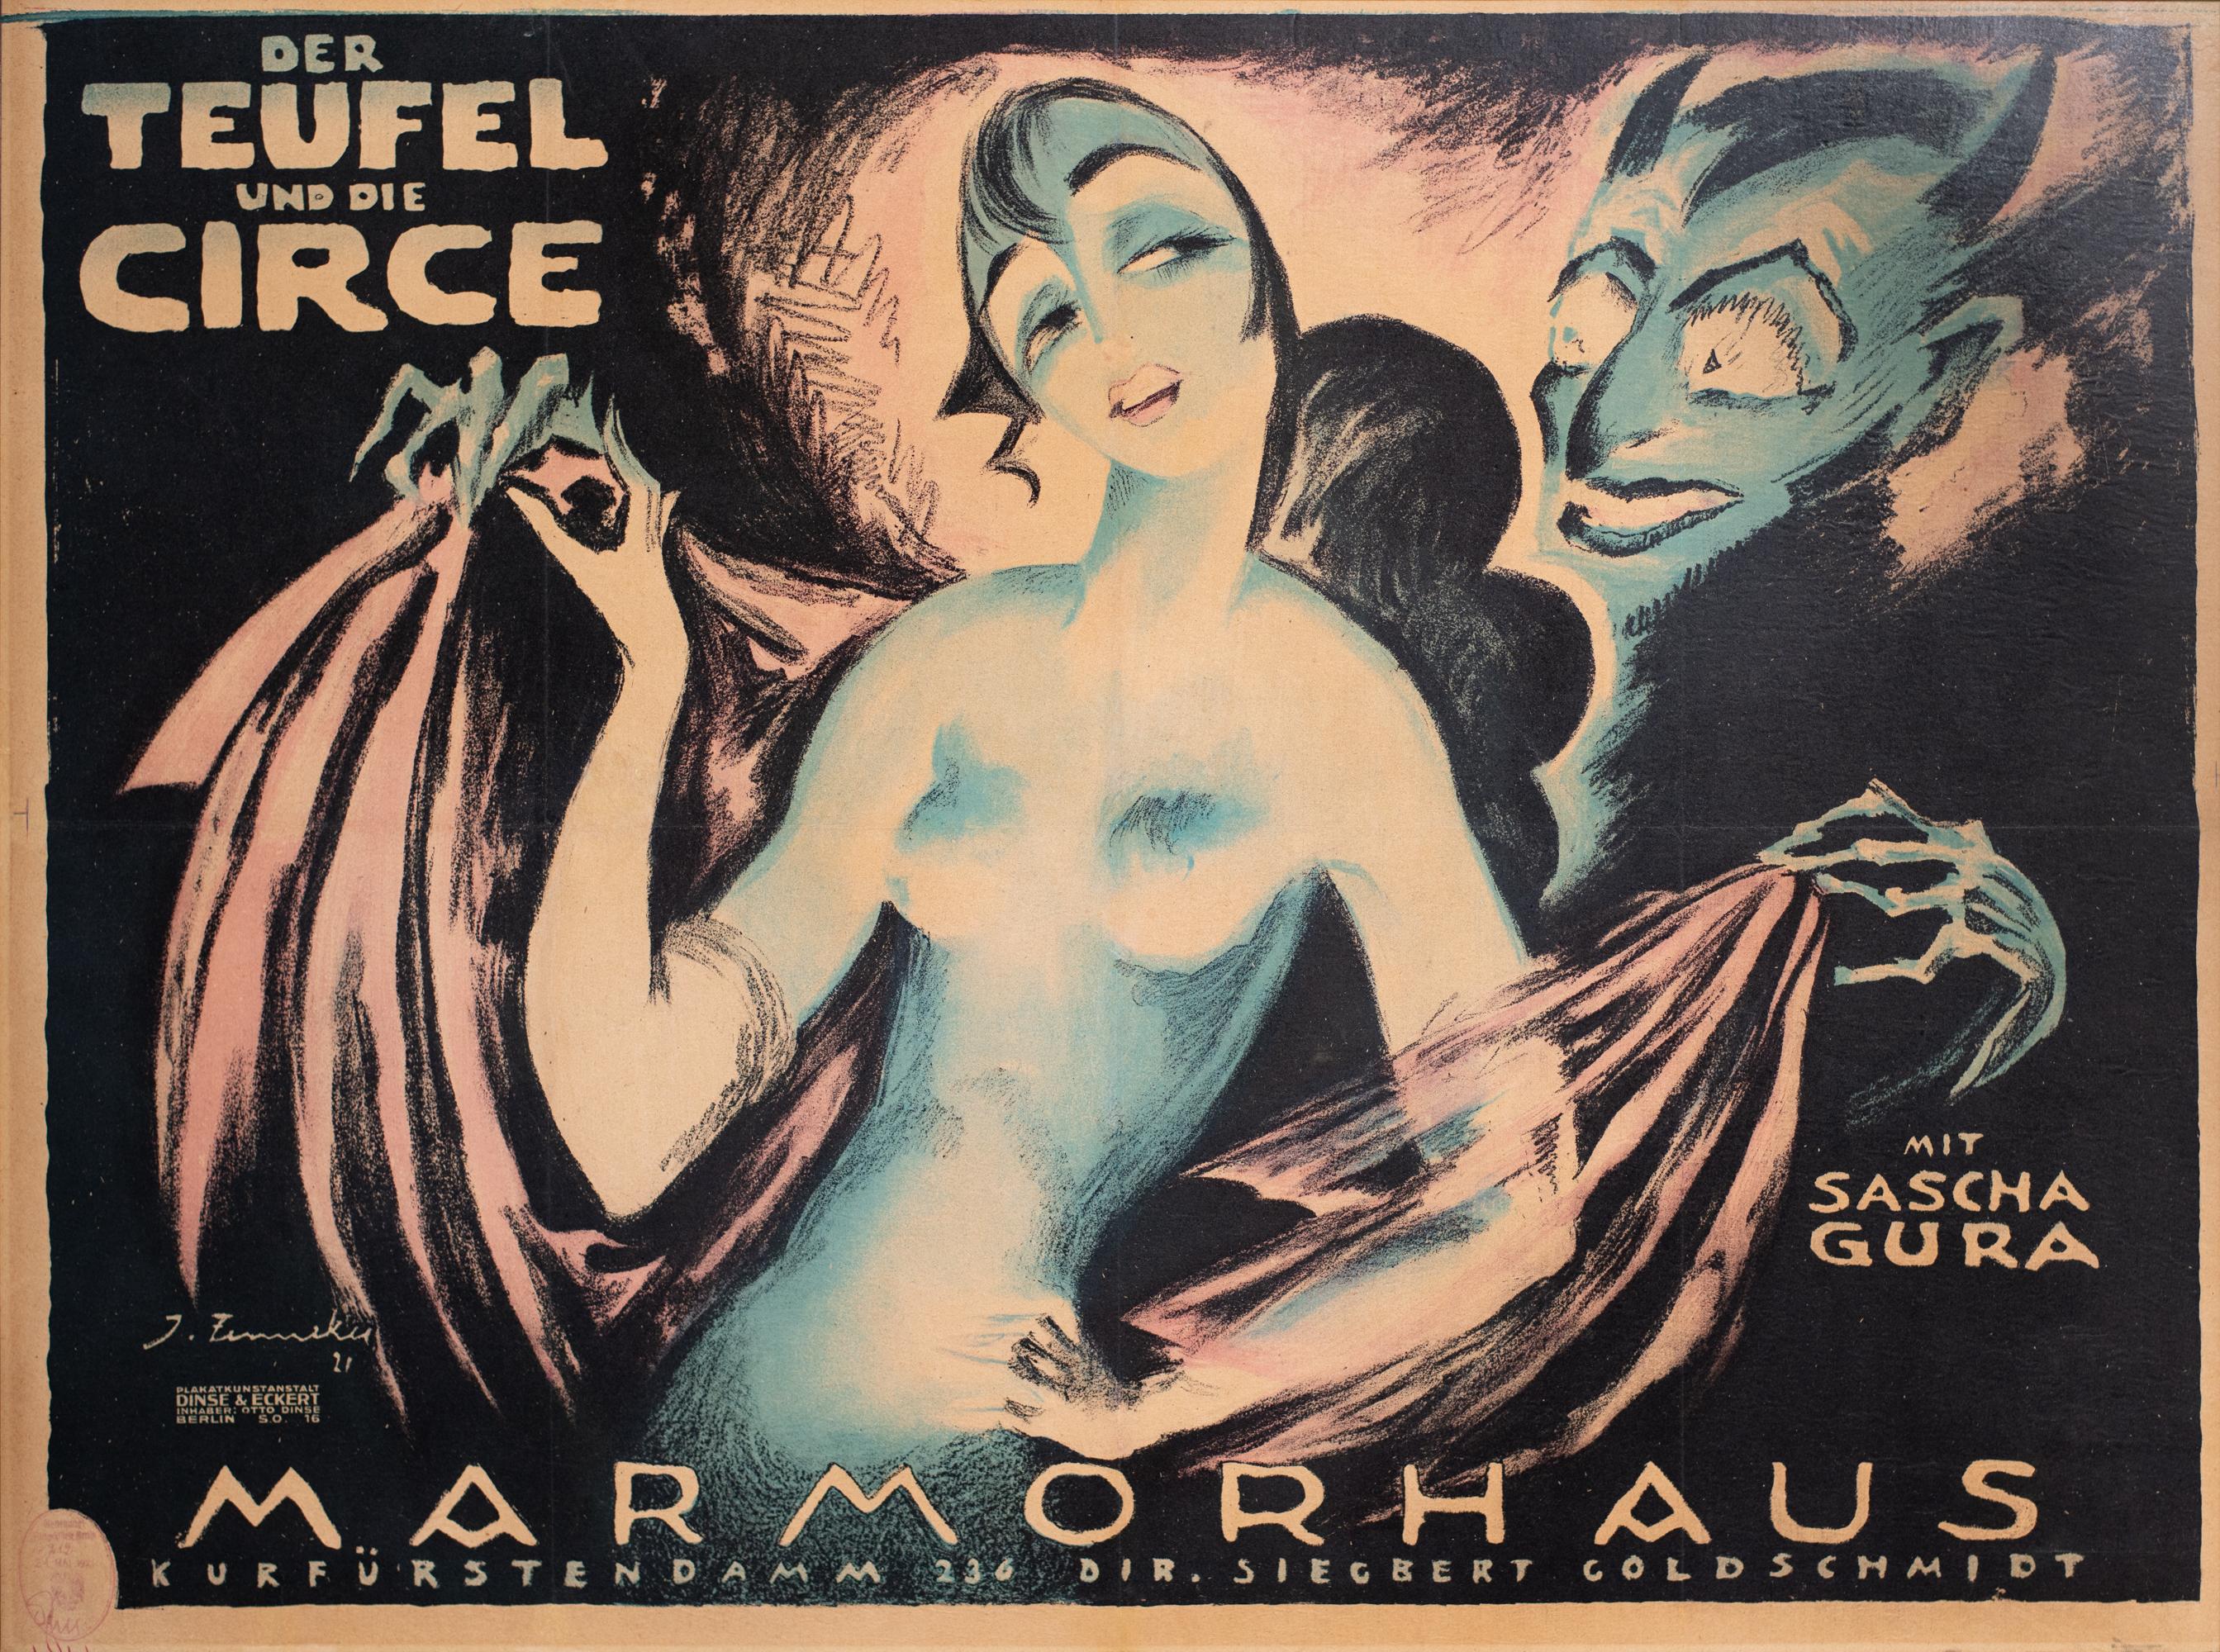 Le peintre, graphiste, producteur et décorateur Josef/One est l'un des plus importants représentants des affiches de films artistiques des années 1910 et 1920. Le cinéma berlinois Marmorhaus, situé sur le Kurfürstendamm et connu pour ses premières